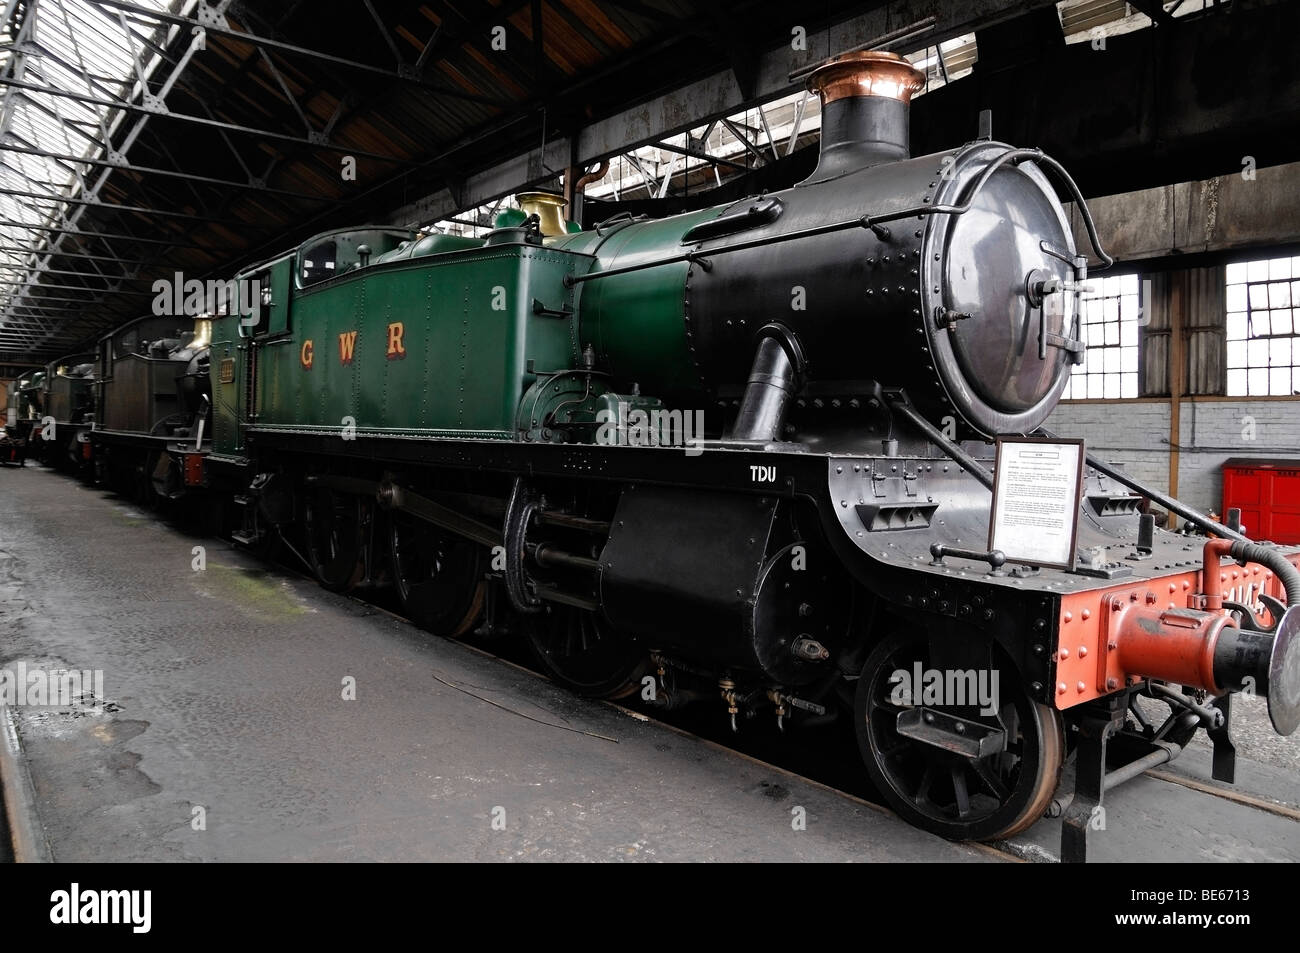 Abri de moteur à Didcot Railway Centre, avec 4144 Train à vapeur. Didcot, Oxfordshire, Angleterre, Royaume-Uni. Banque D'Images